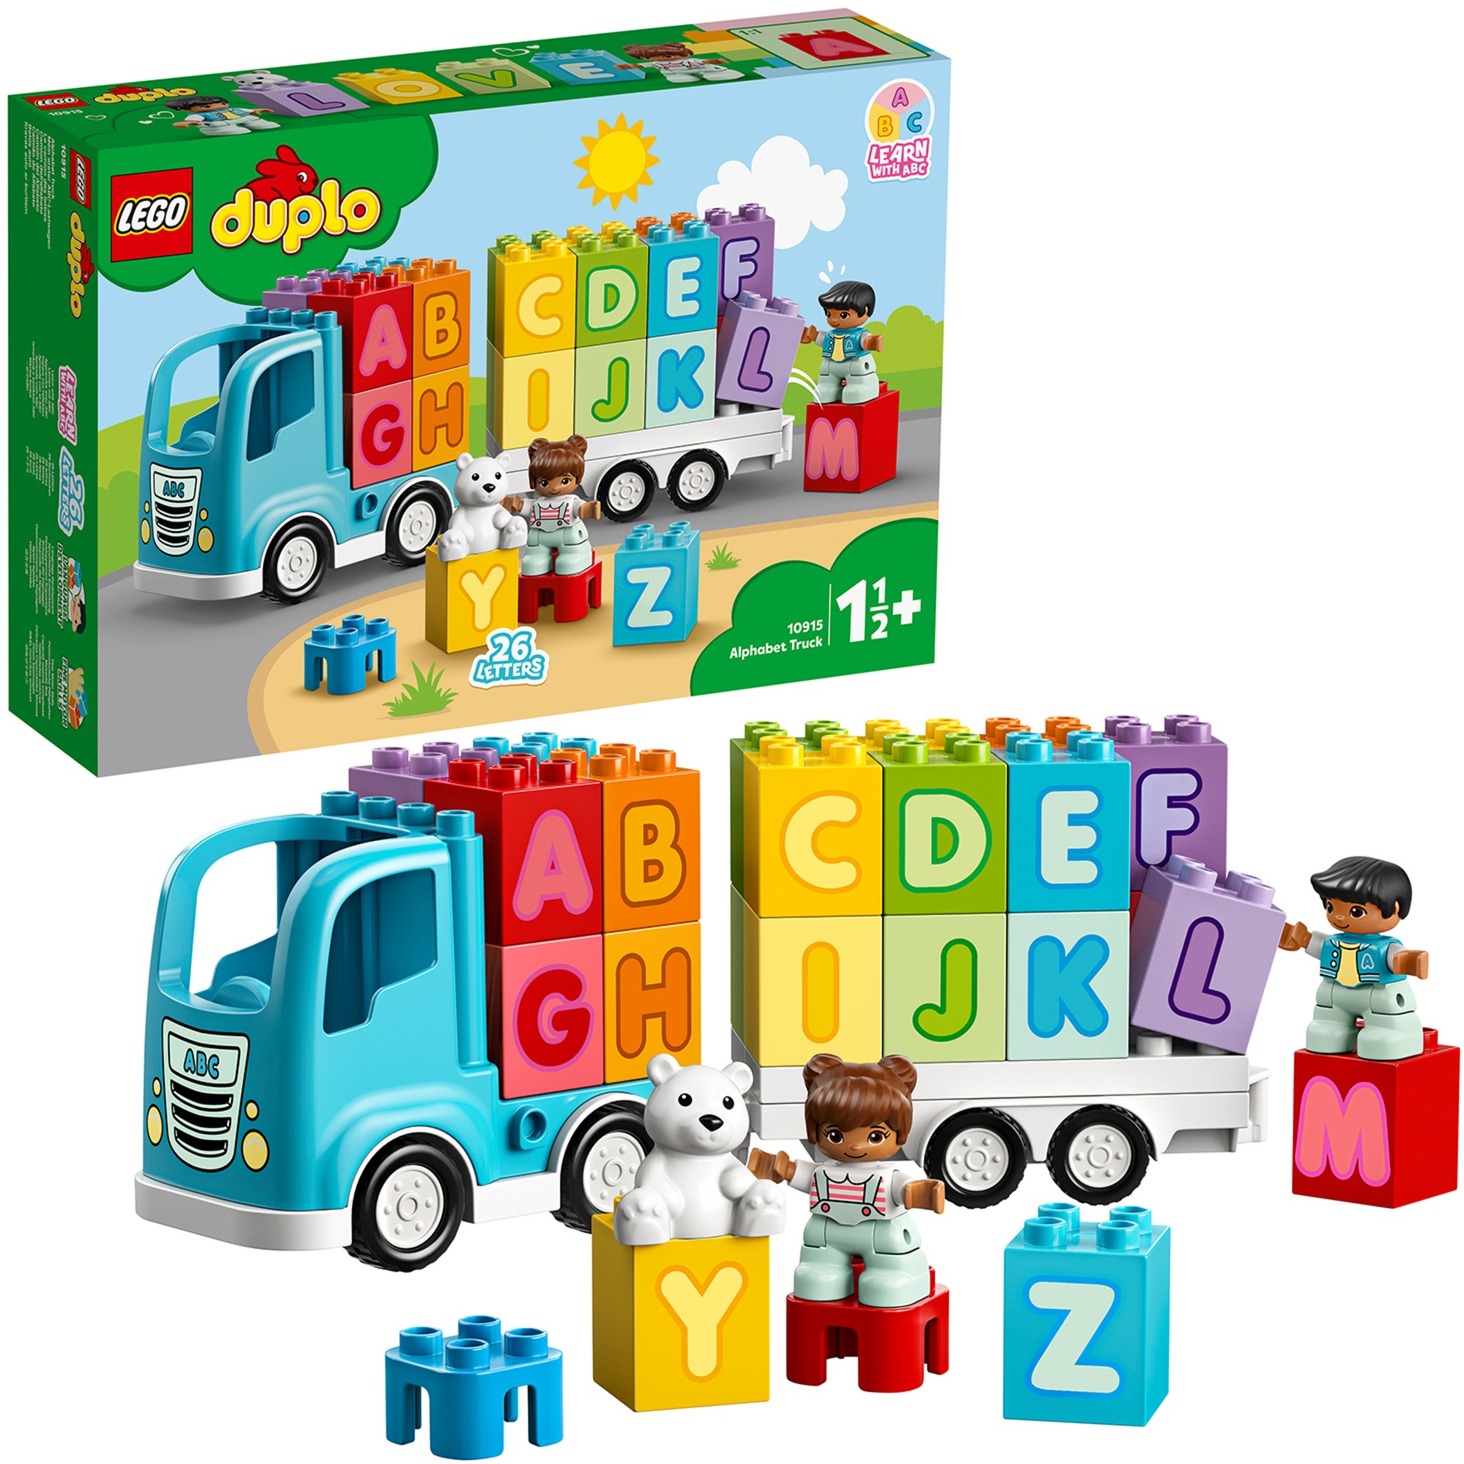 Spielzeug: Lego 10915 DUPLO Mein erster ABC-Lastwagen